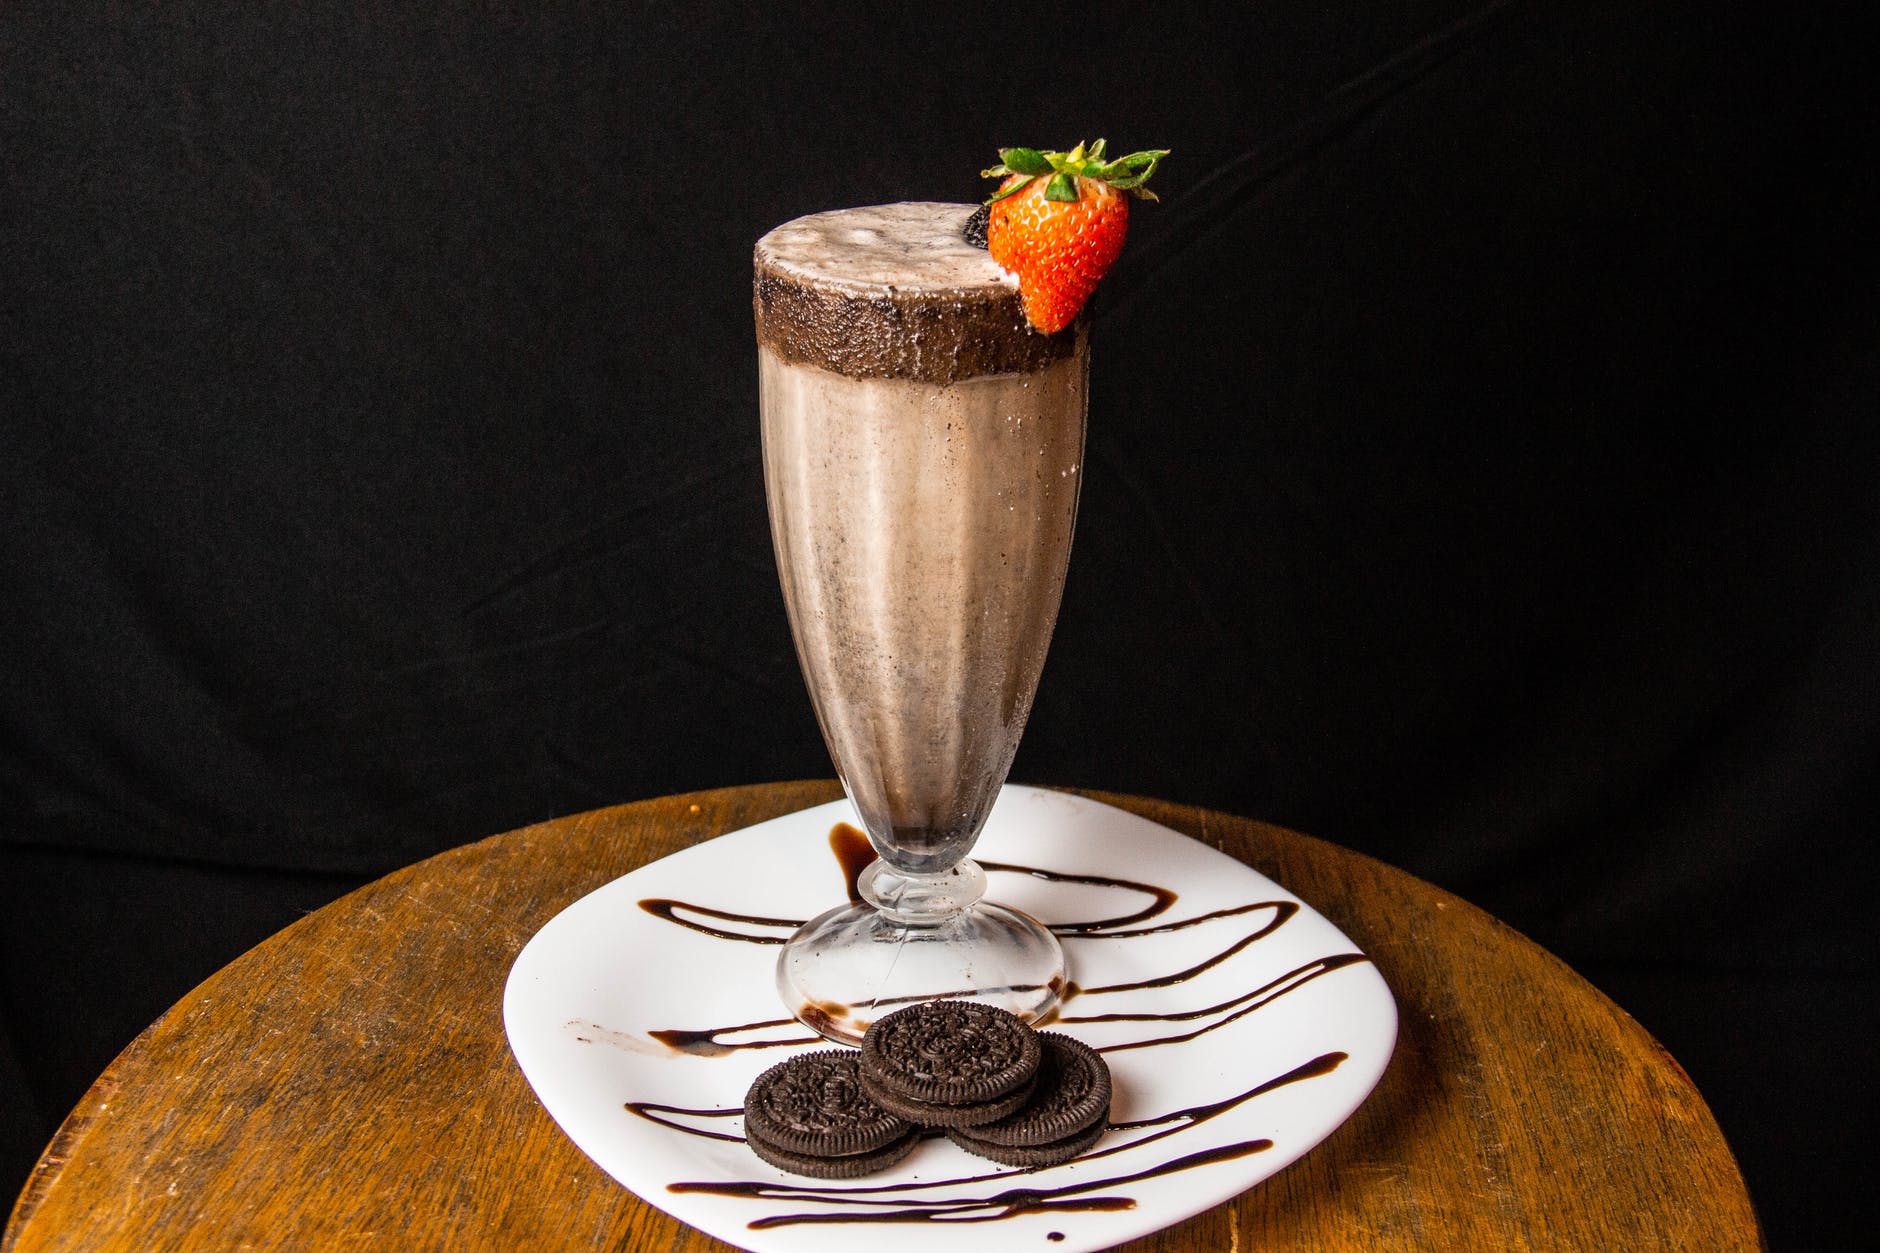 Milkshake de sorvete irresistível: Confira essa receita caseira, simples e deliciosa!